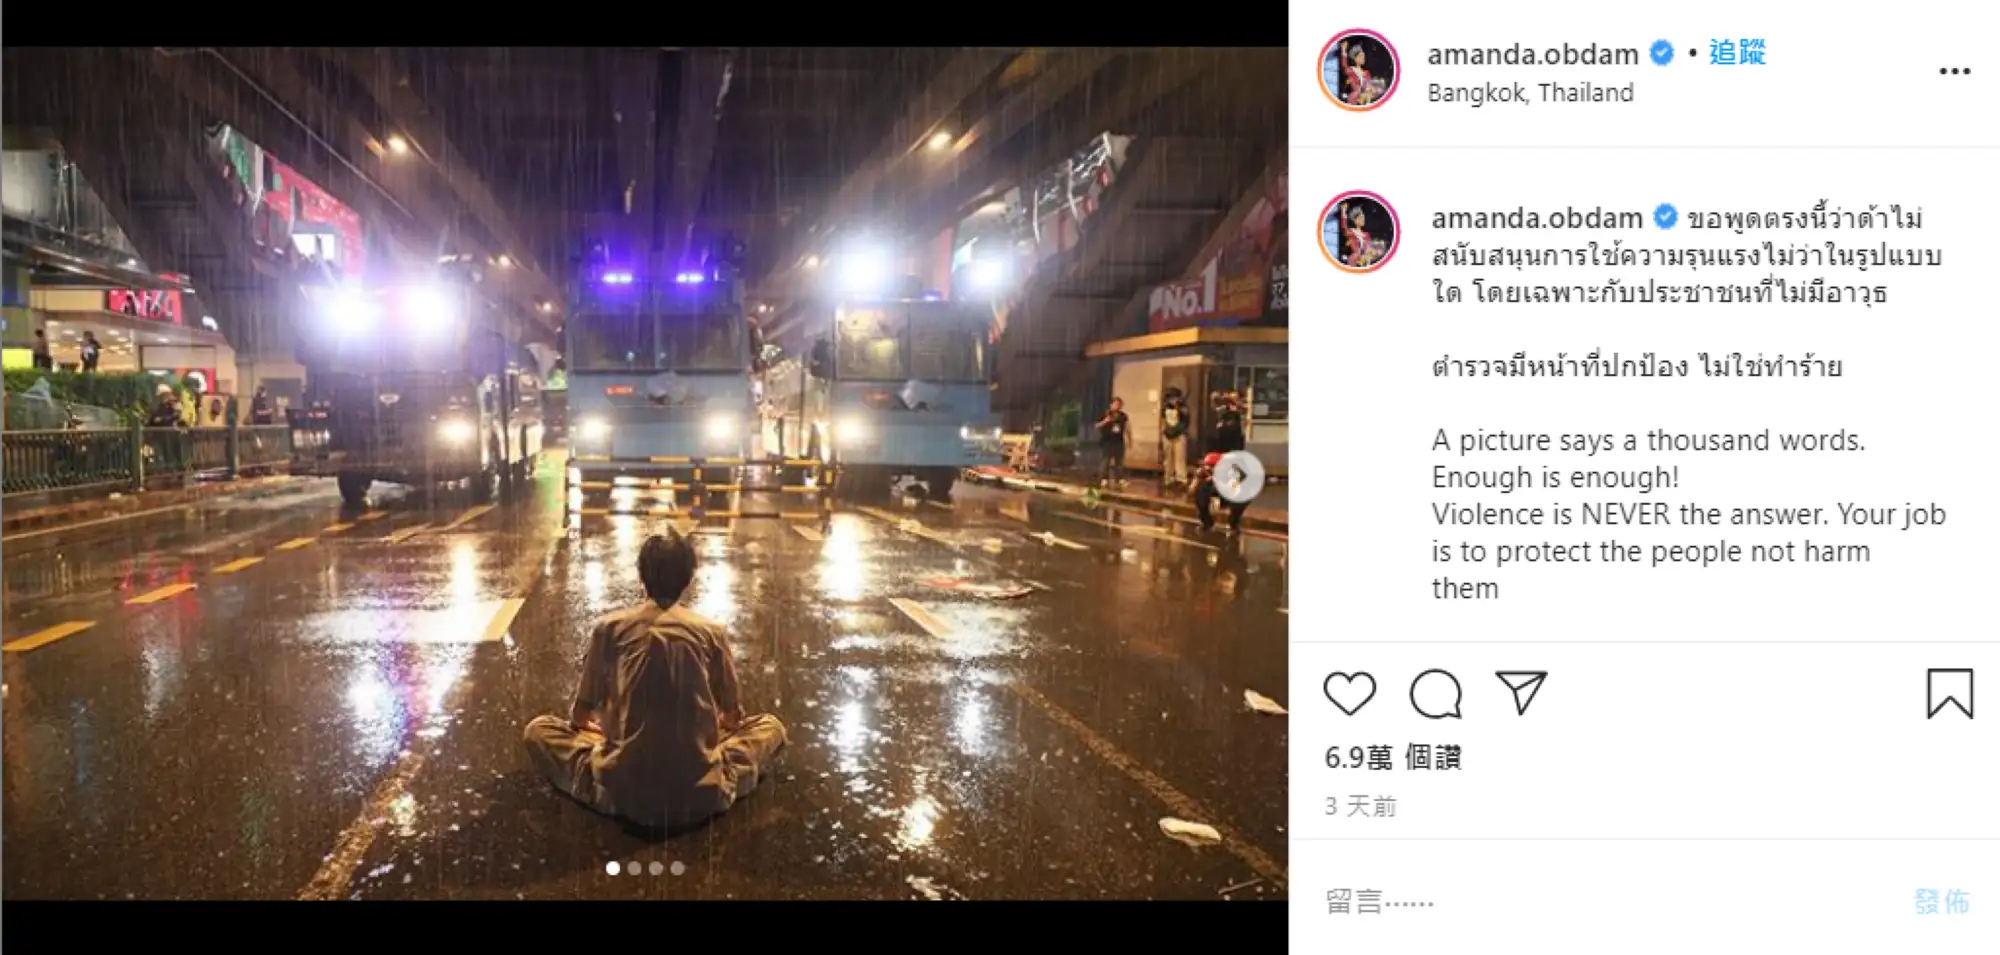 刚夺下泰国环球小姐(Miss Universe Thailand)后冠的Amanda Obdam)也在Instagram上声援示威抗议者（图片来源：Instagram）